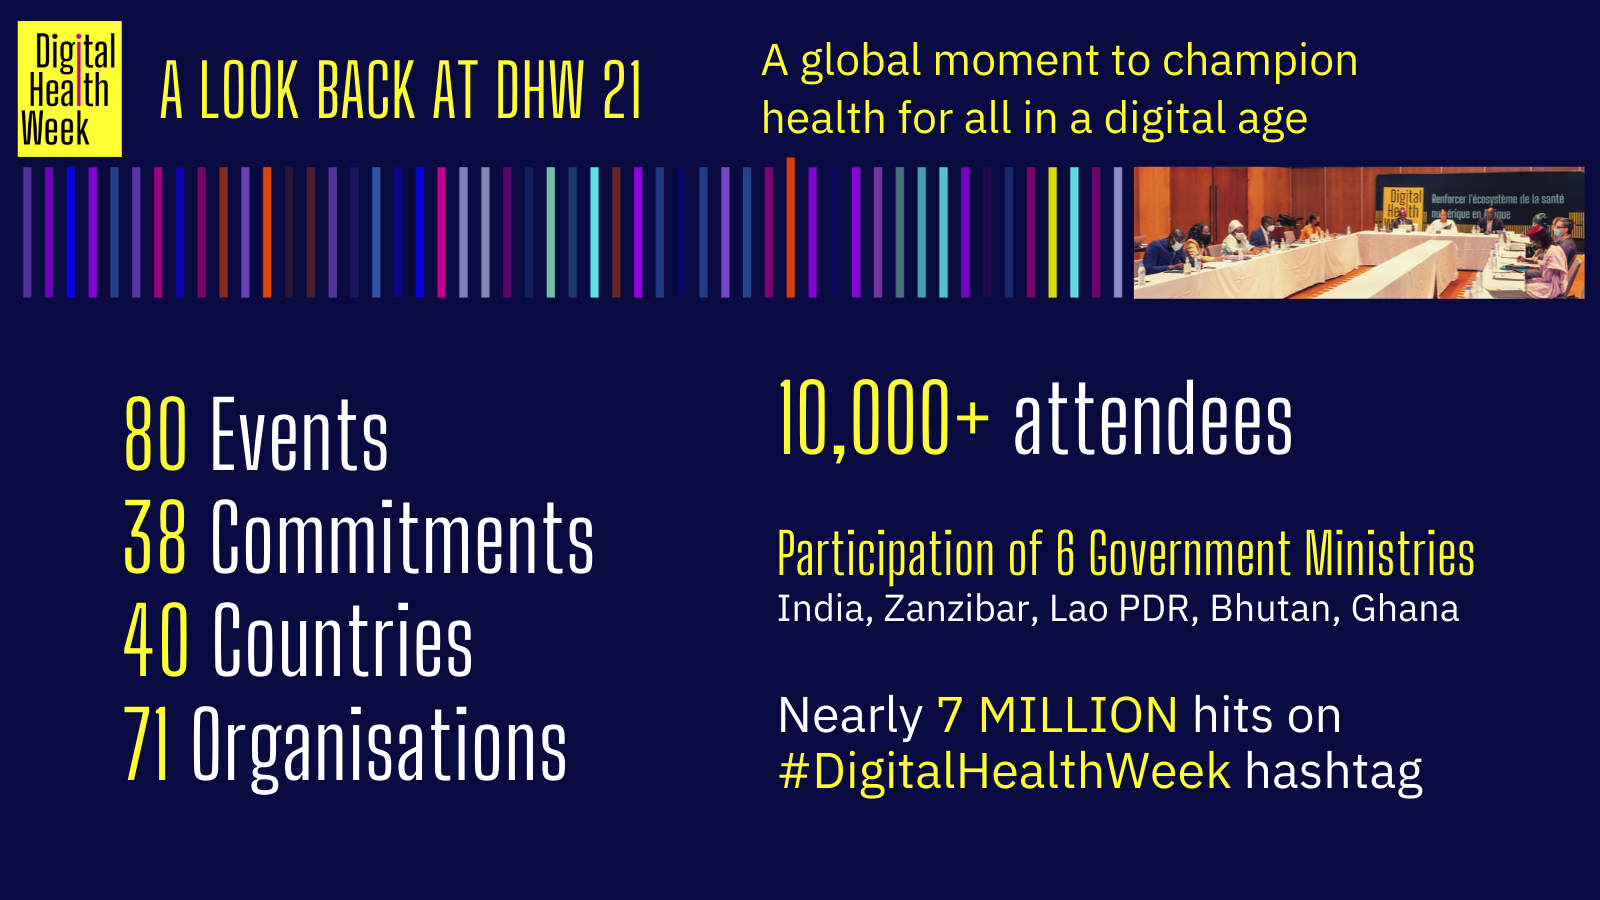 Digital Health Week 2021 A Look Back